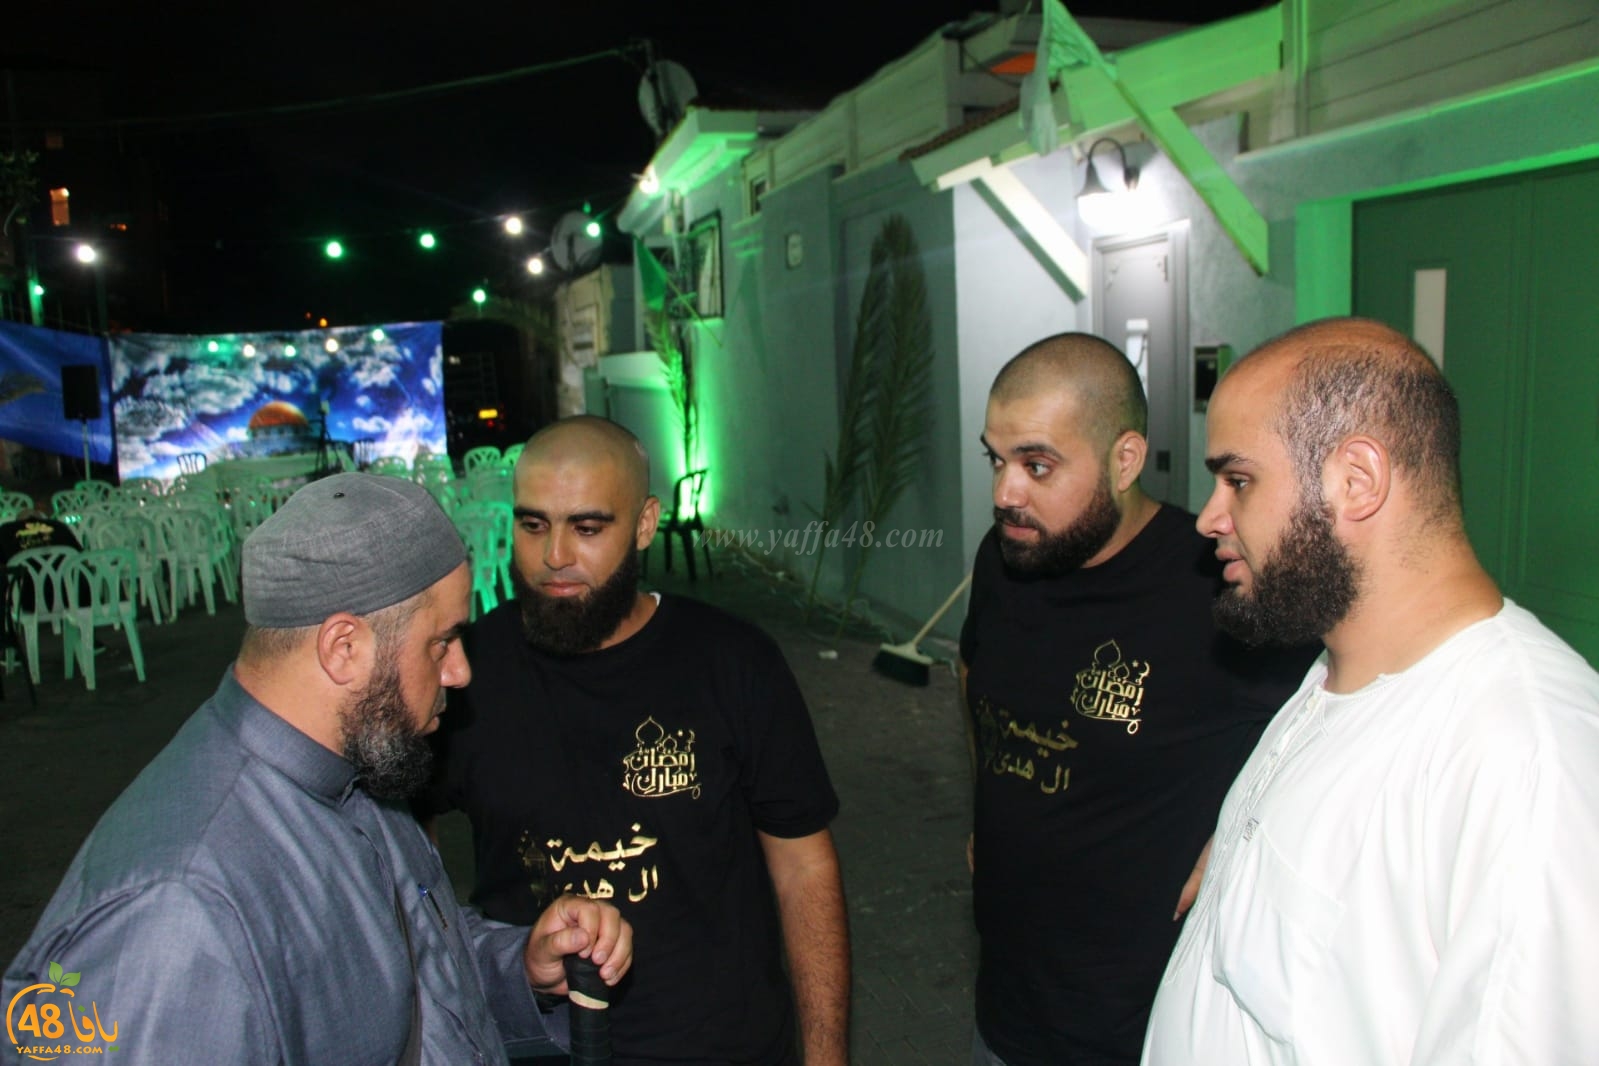  بالصور: خيمة الهدى الدعوية بيافا تستضيف الشيخ محمد عايش 